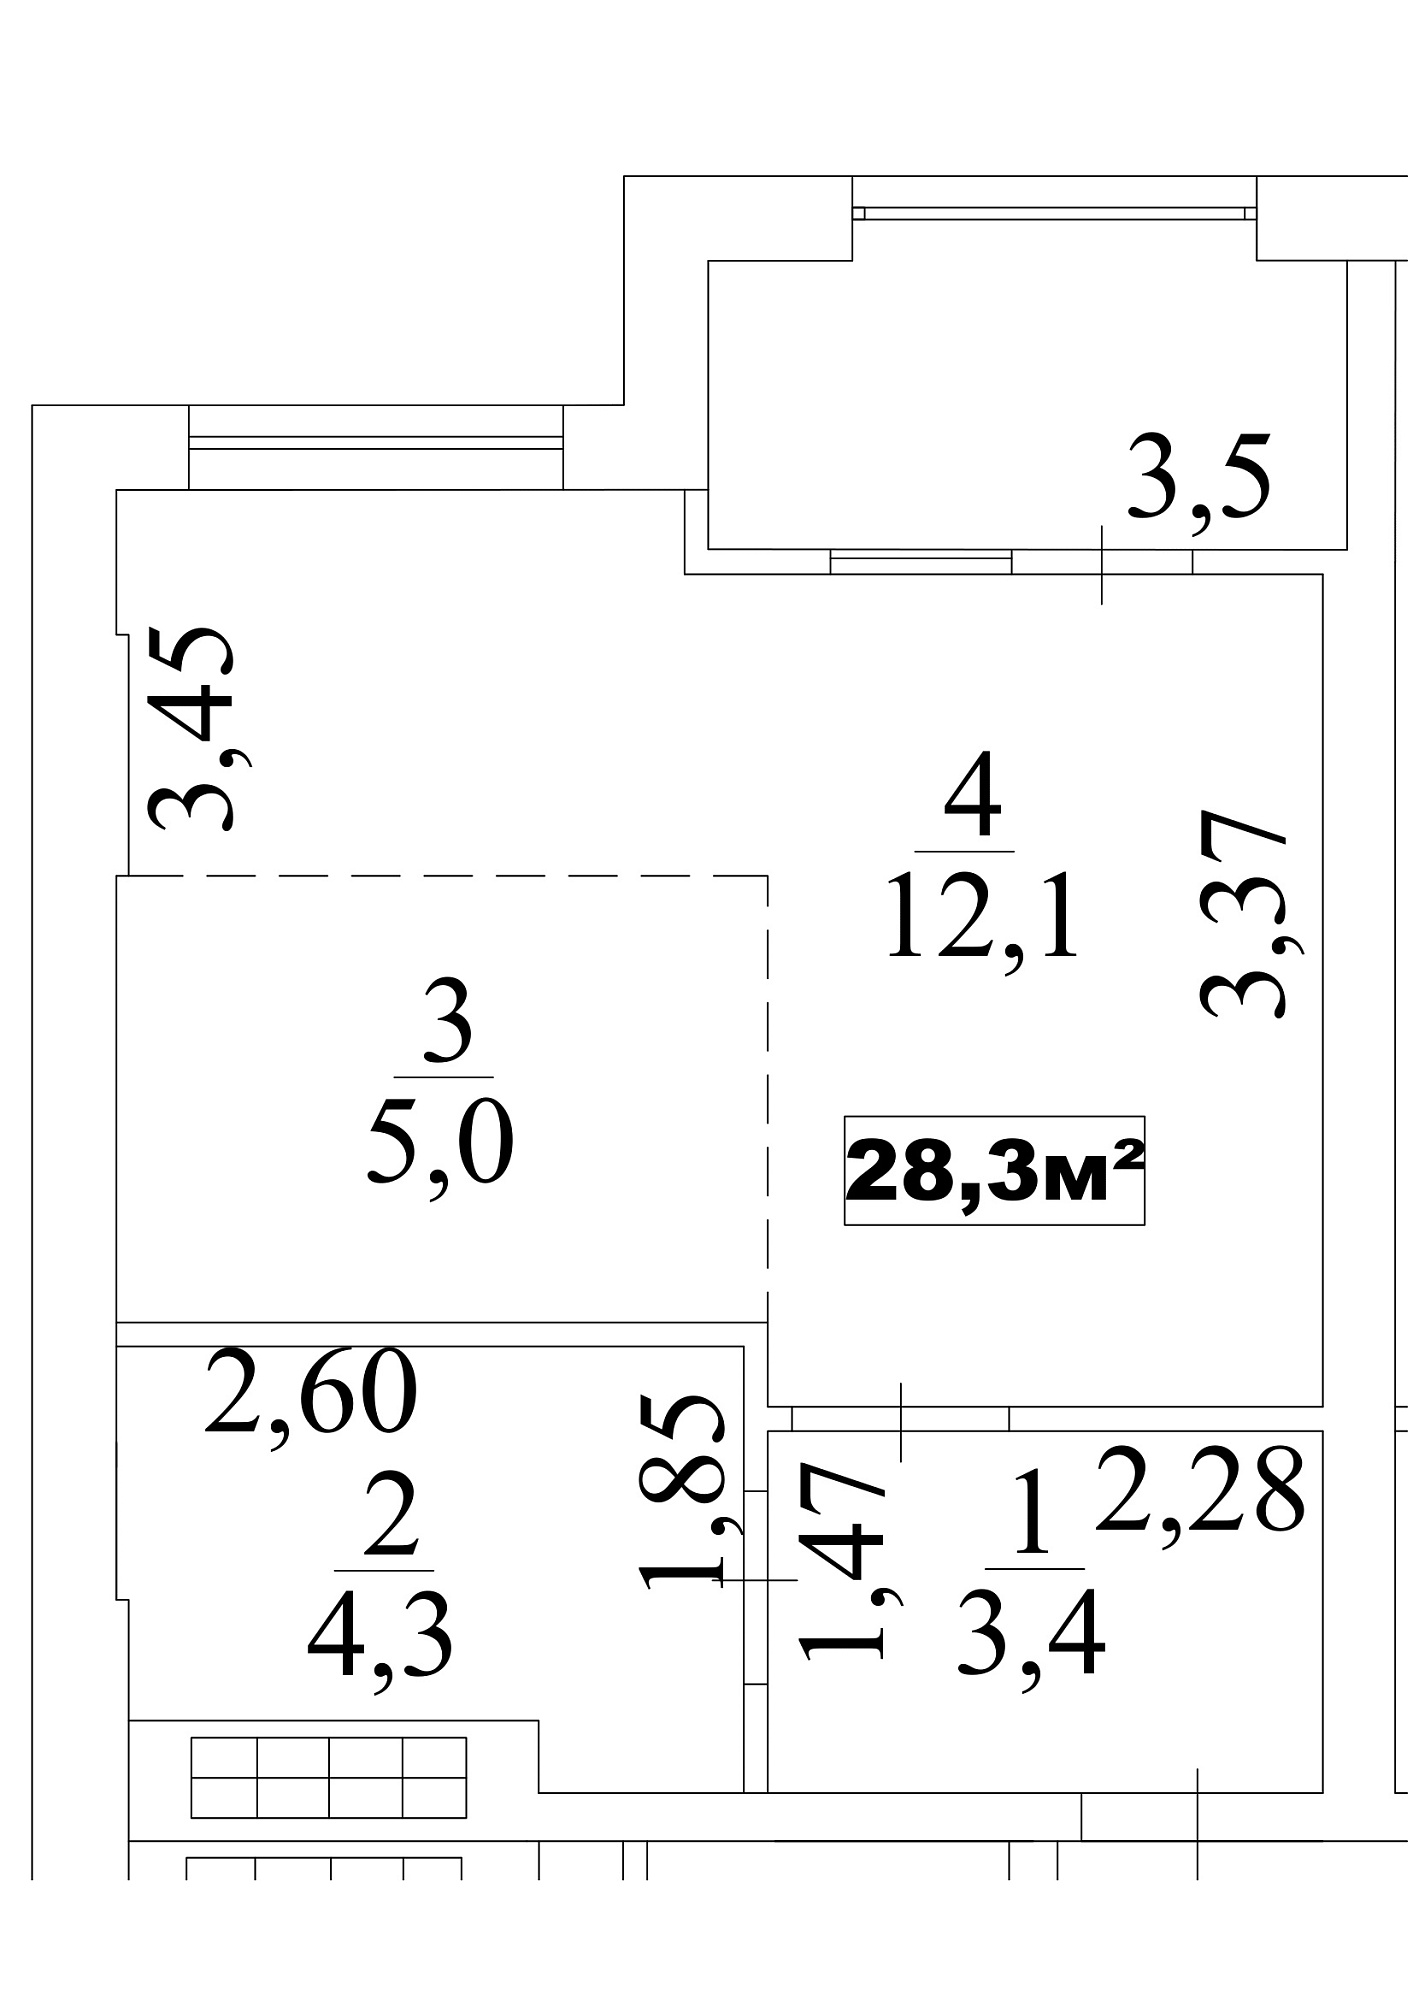 Планування Smart-квартира площею 28.3м2, AB-10-08/0066б.